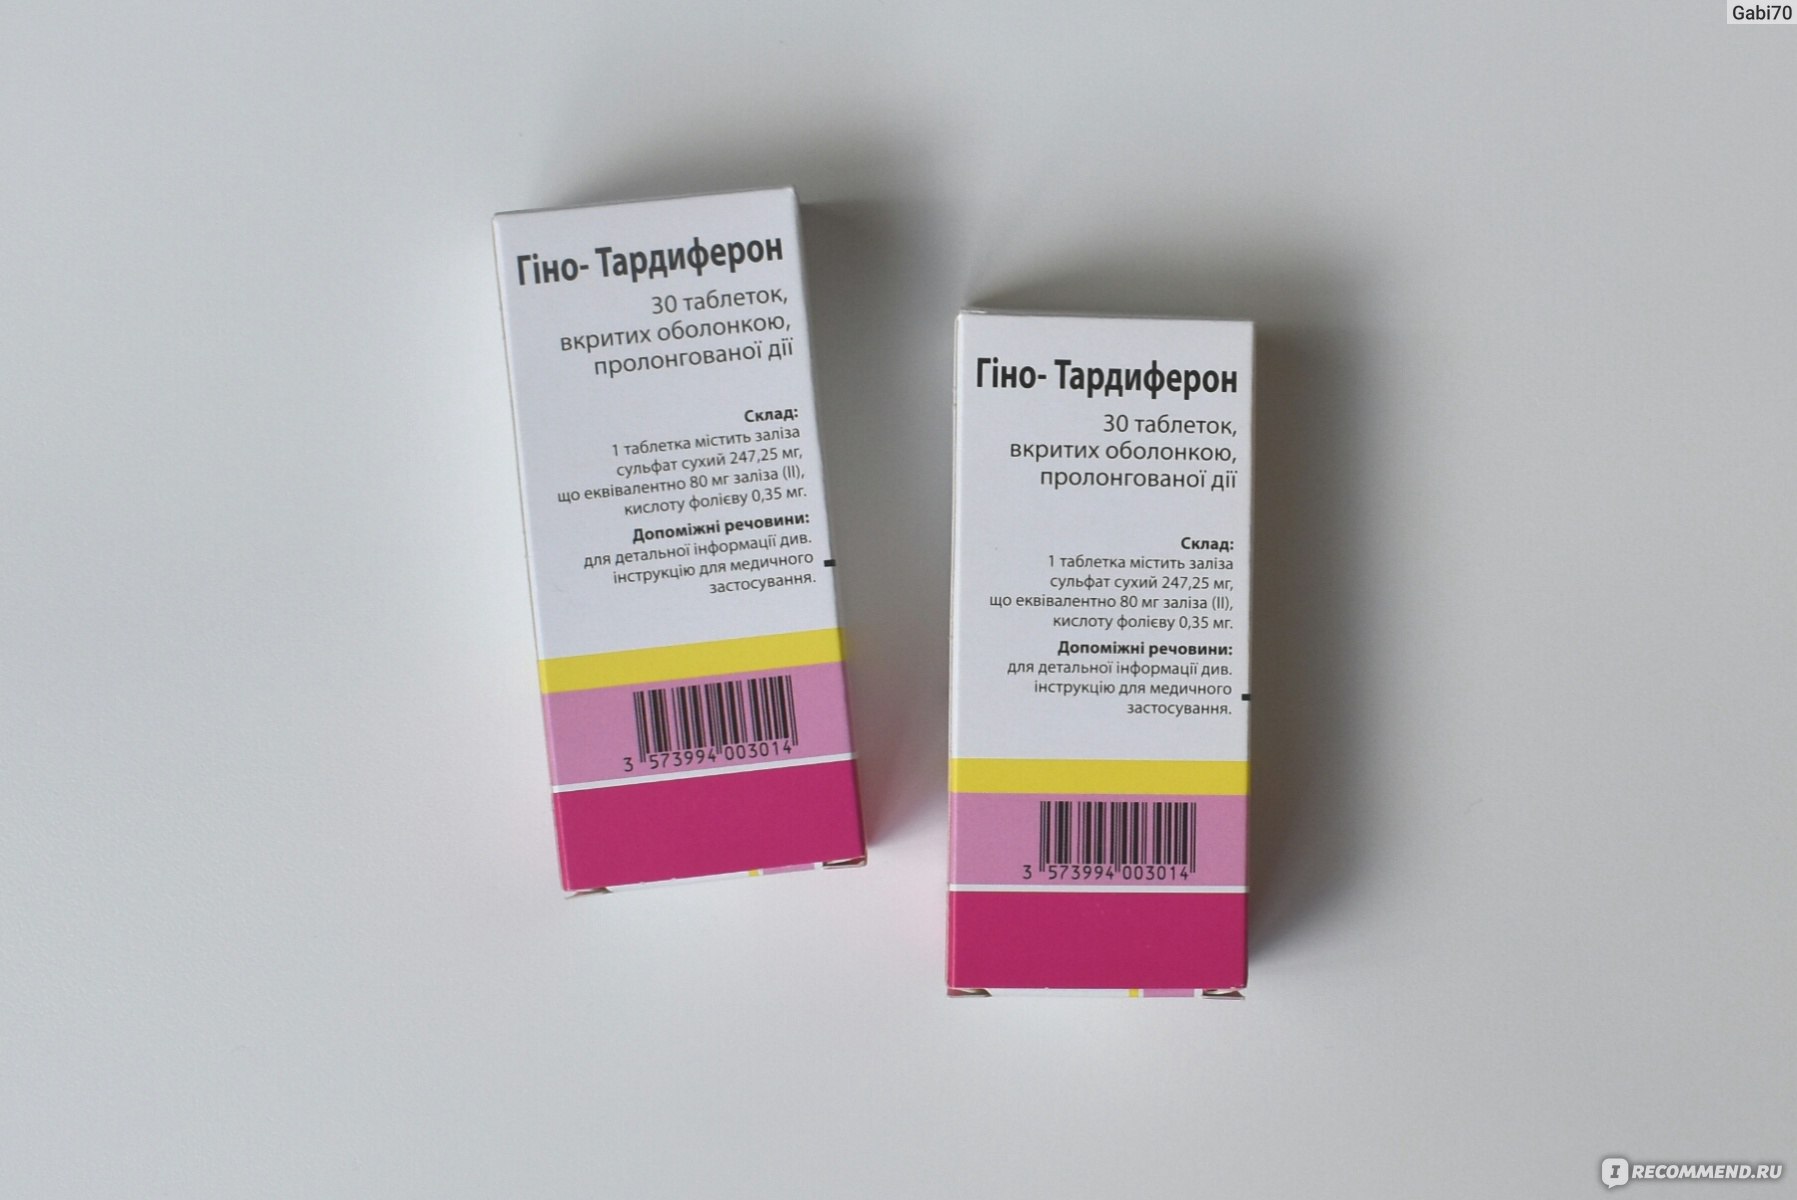 Таблетки Гино-тардиферон антианемический препарат - «Гино-Тардиферон из .